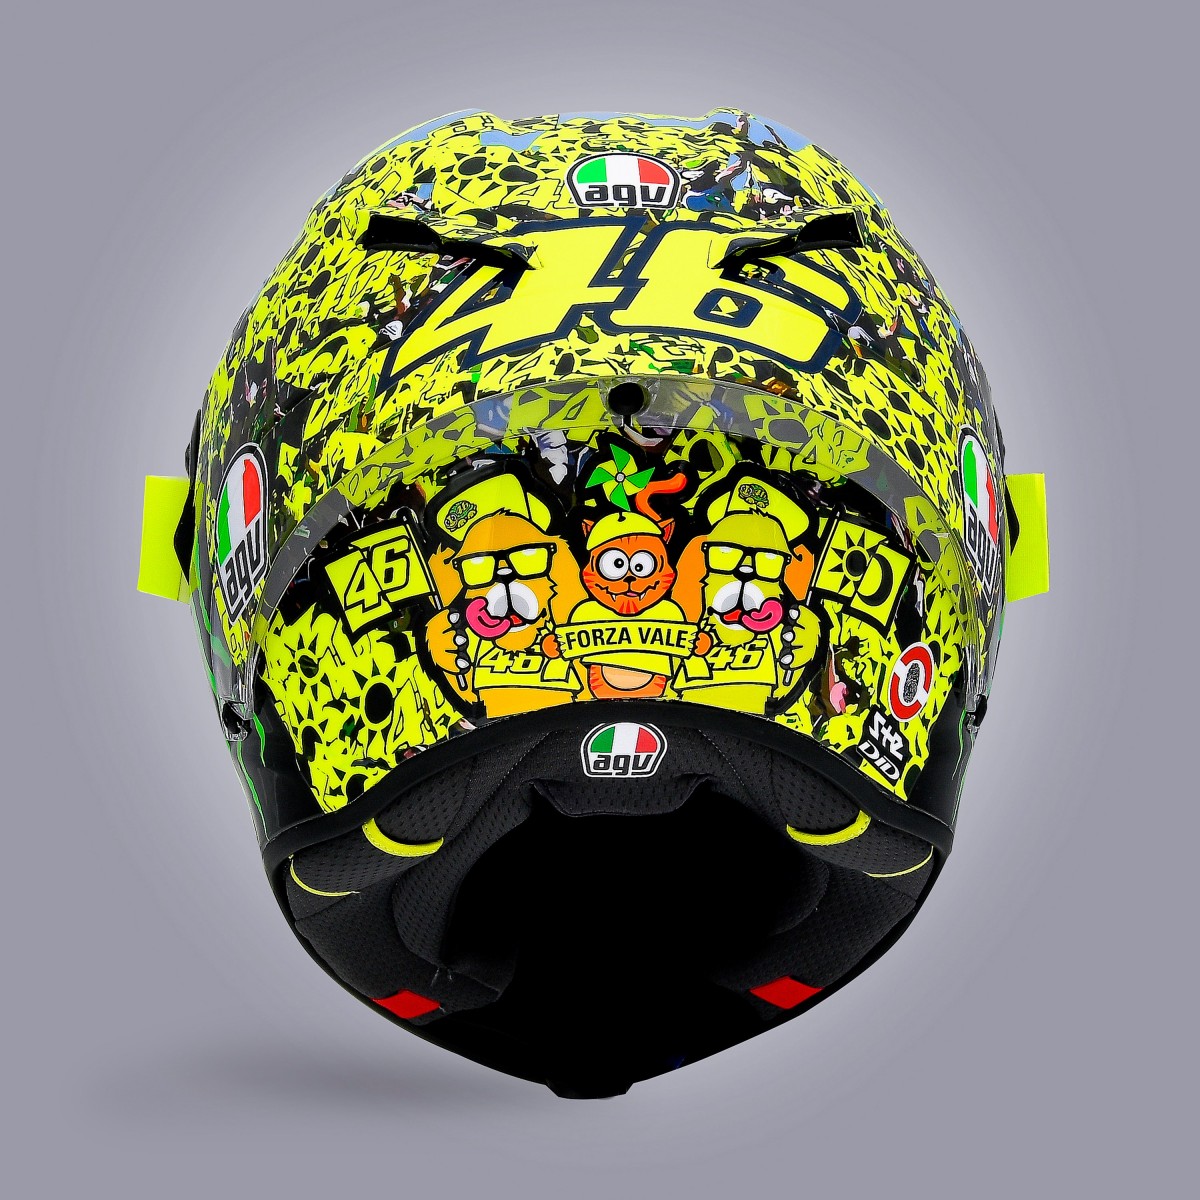 Последний особый шлем Валентино Росси для EmiliaRomagnaGP MotoGP - Popolo Giallo